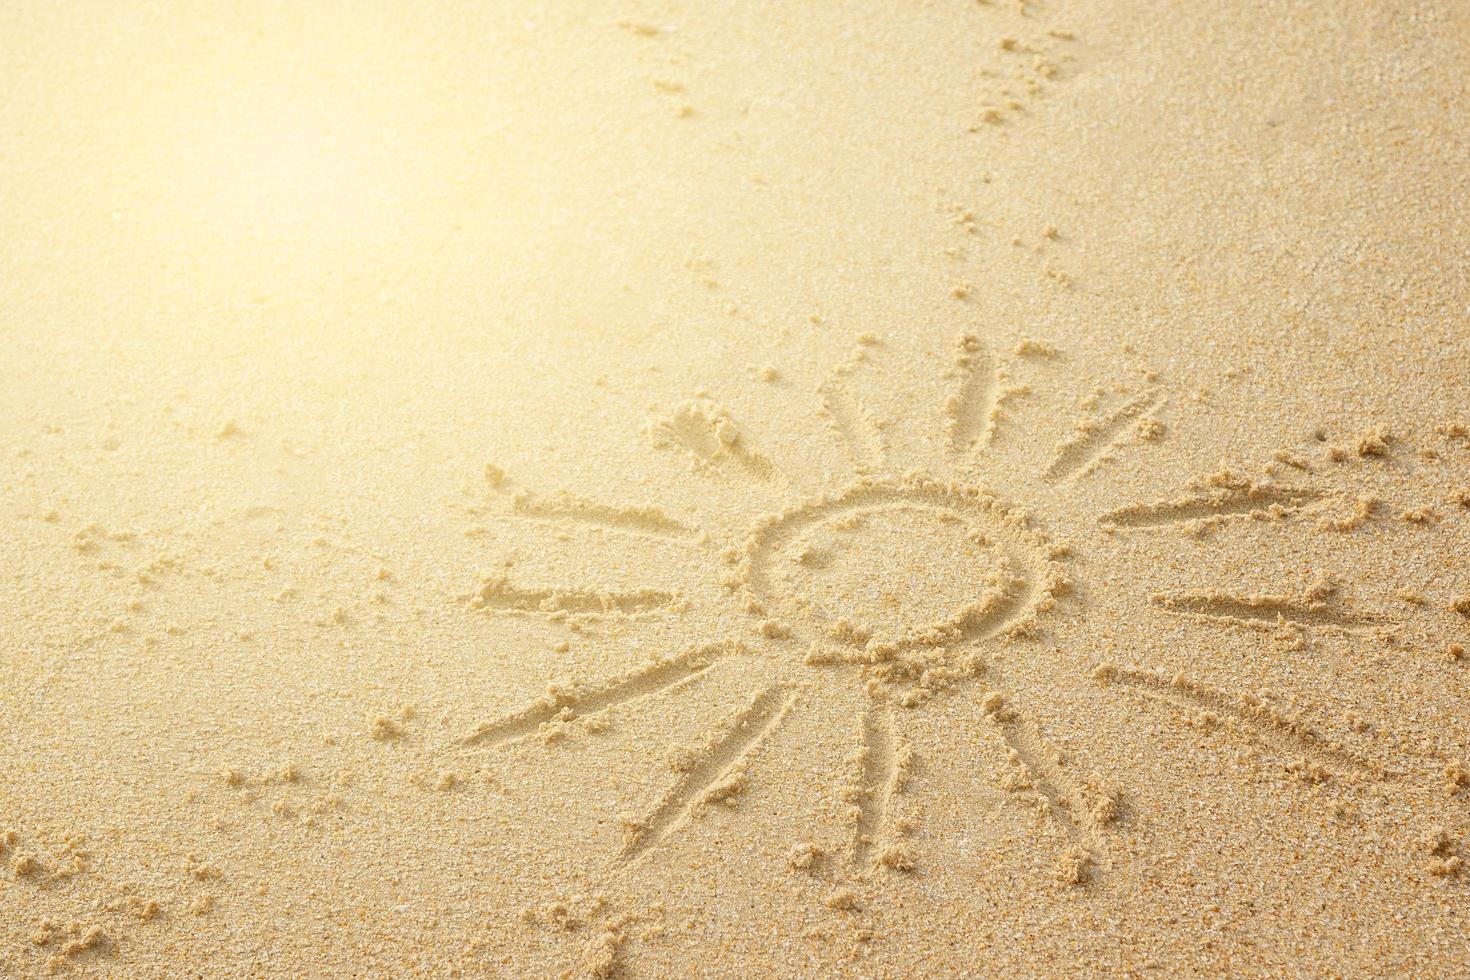 sol en la arena. concepto de cualquier tema de vacaciones en la playa. foto